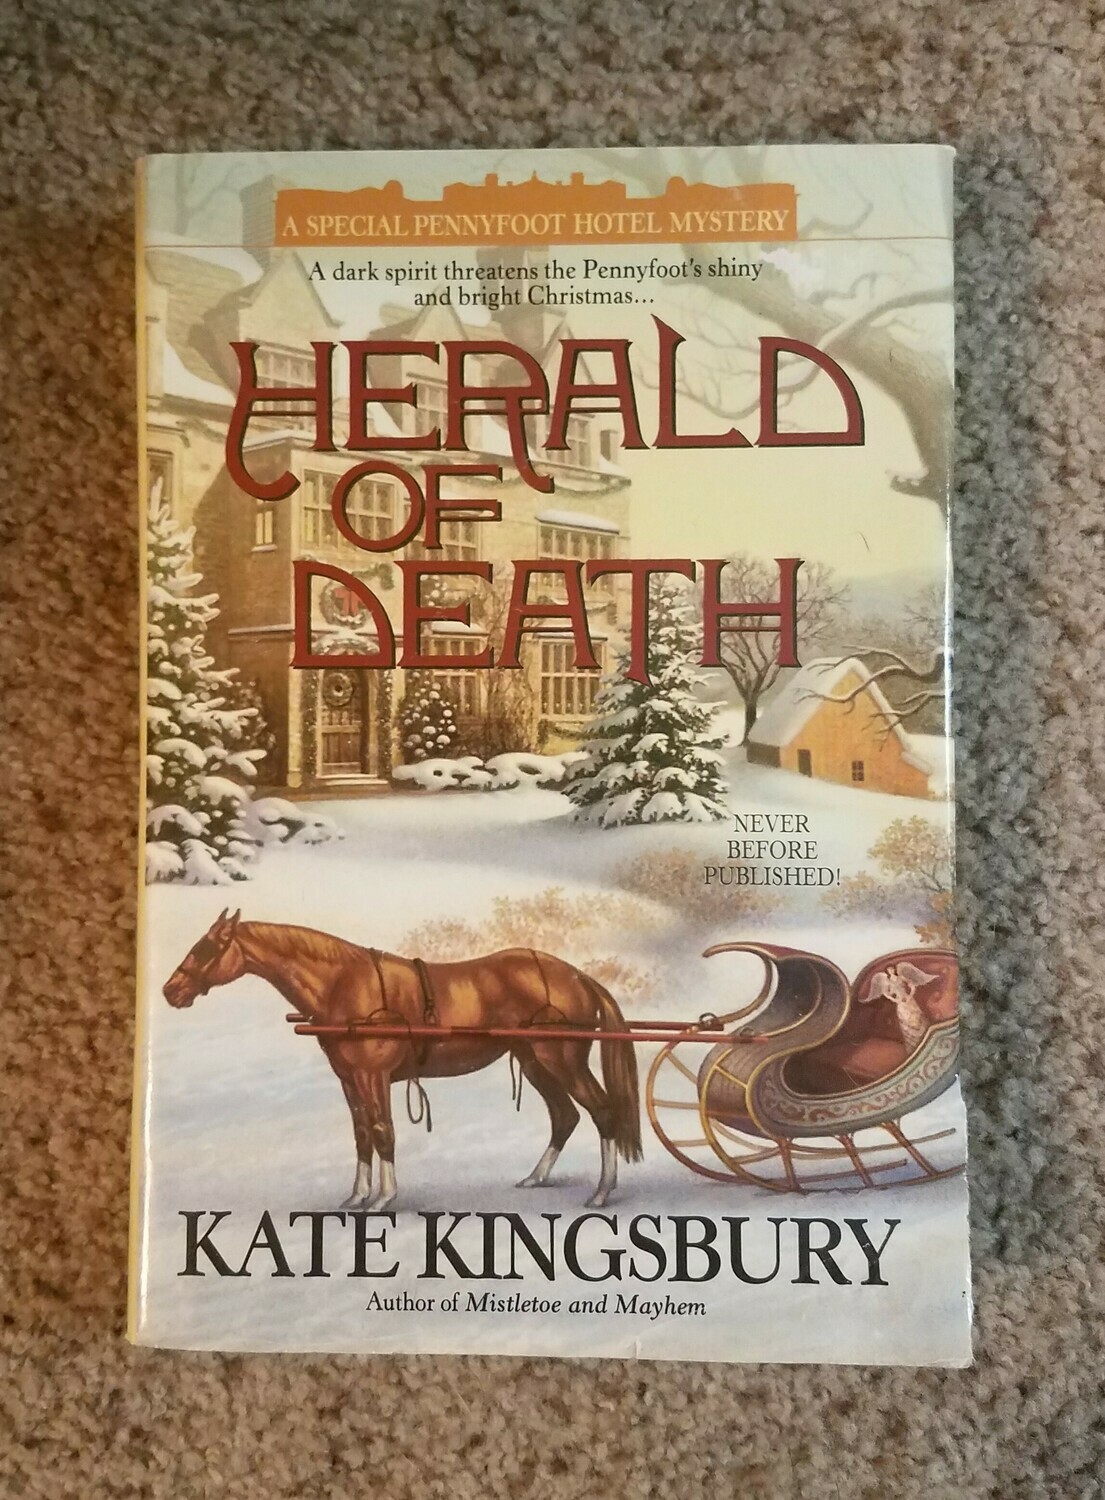 Herald of Death by Kate Kingsbury